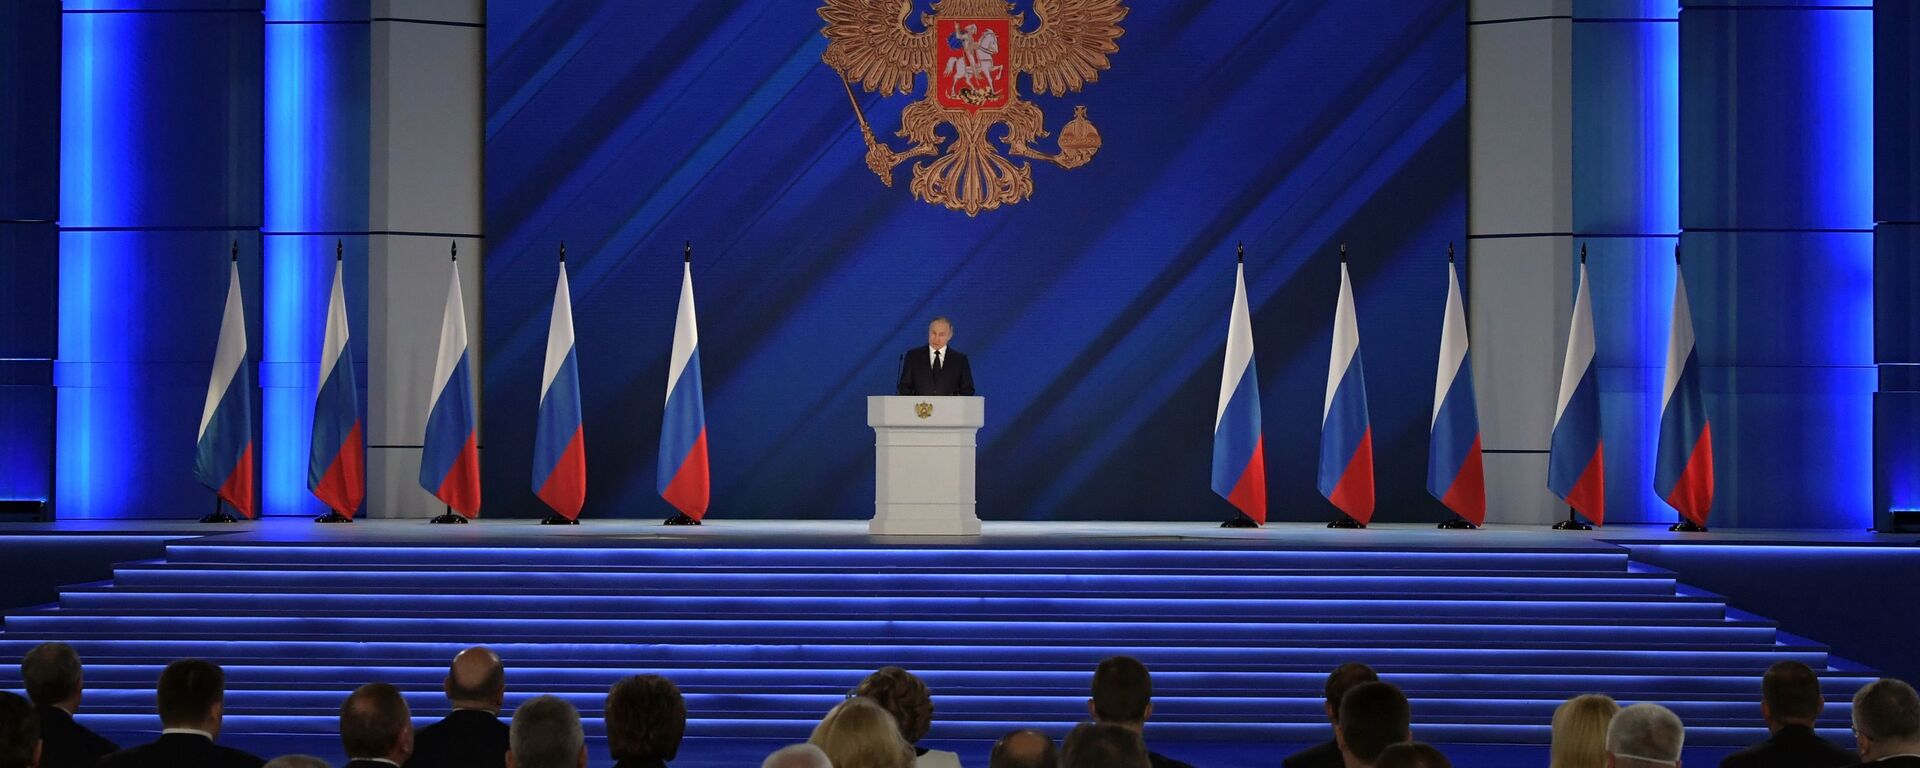 Vladimir Poutine s'adresse à l'Assemblée fédérale, le 21 avril 2021 - Sputnik Afrique, 1920, 21.04.2021